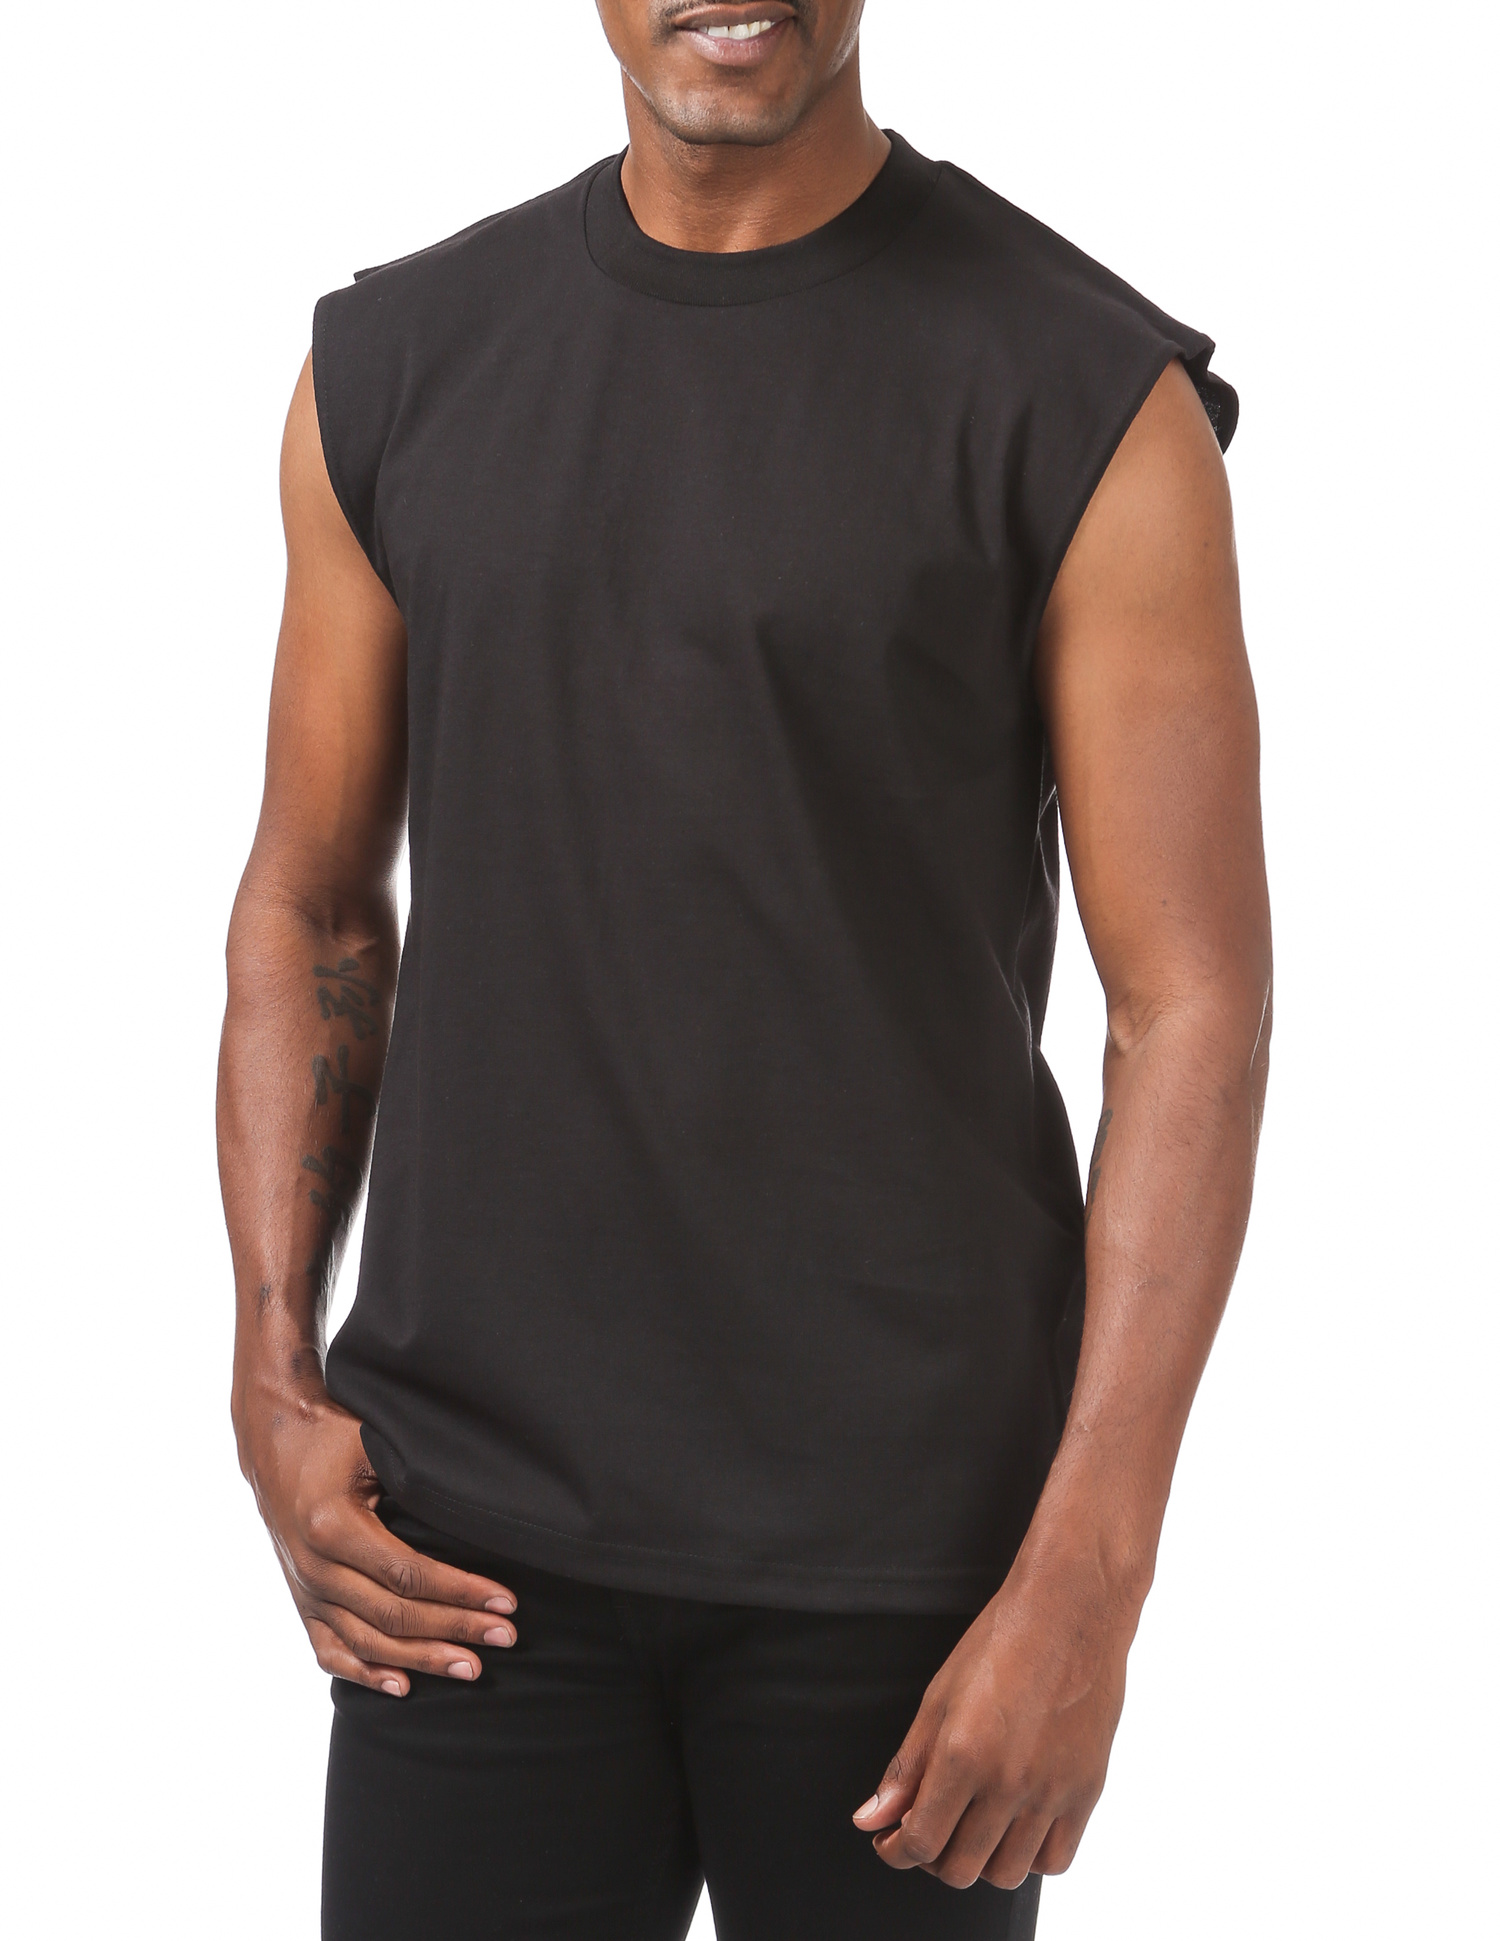 113 BLACK Heavyweight Sleeveless Muscle T-Shirt - Shirts